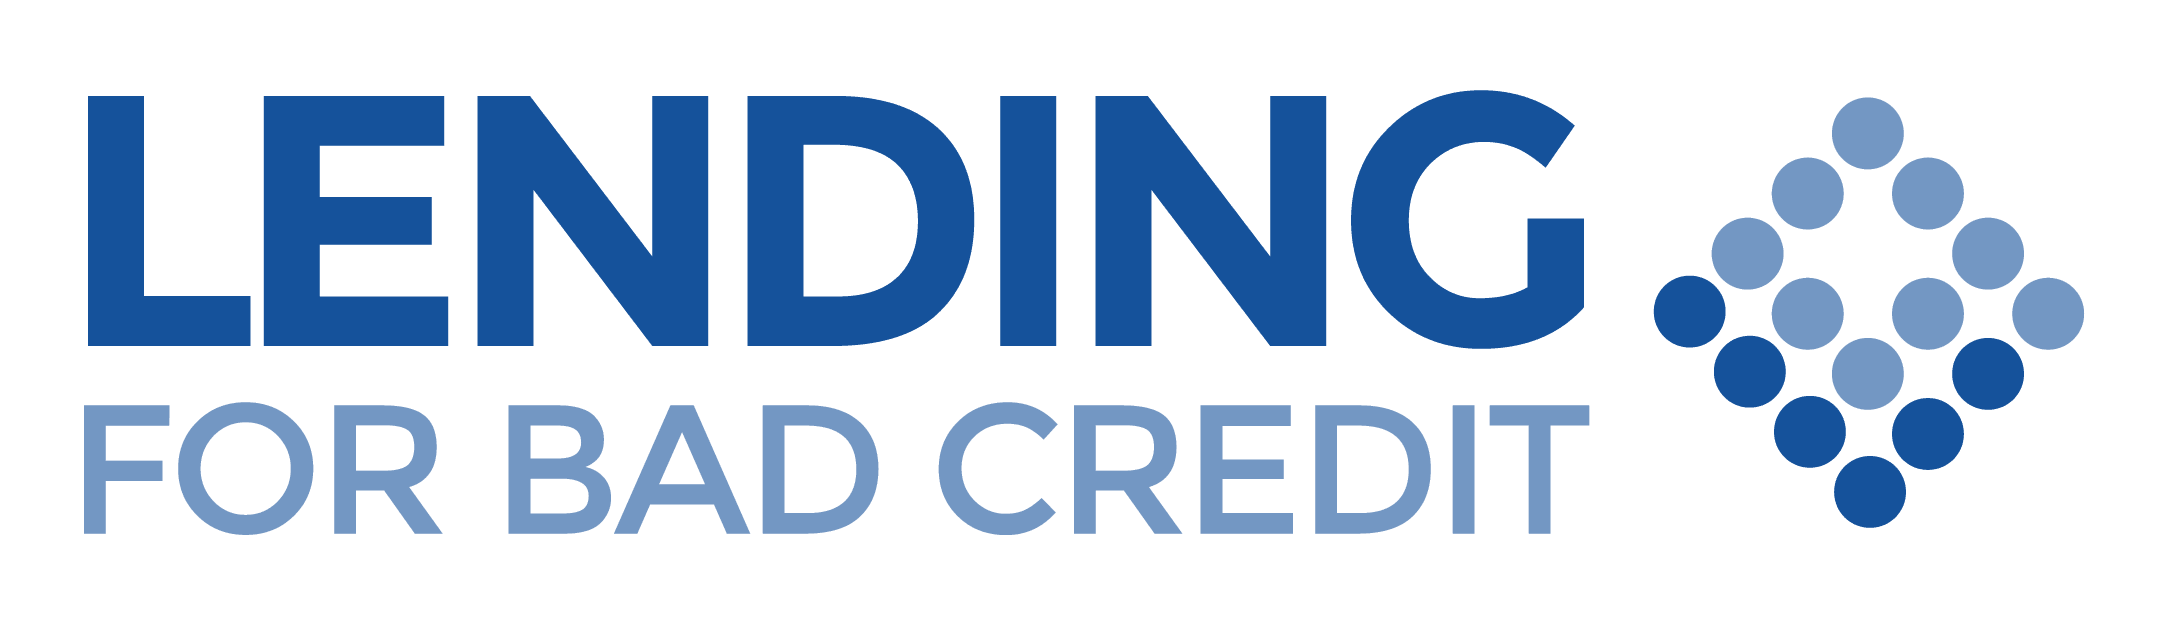 Lending for Bad Credit